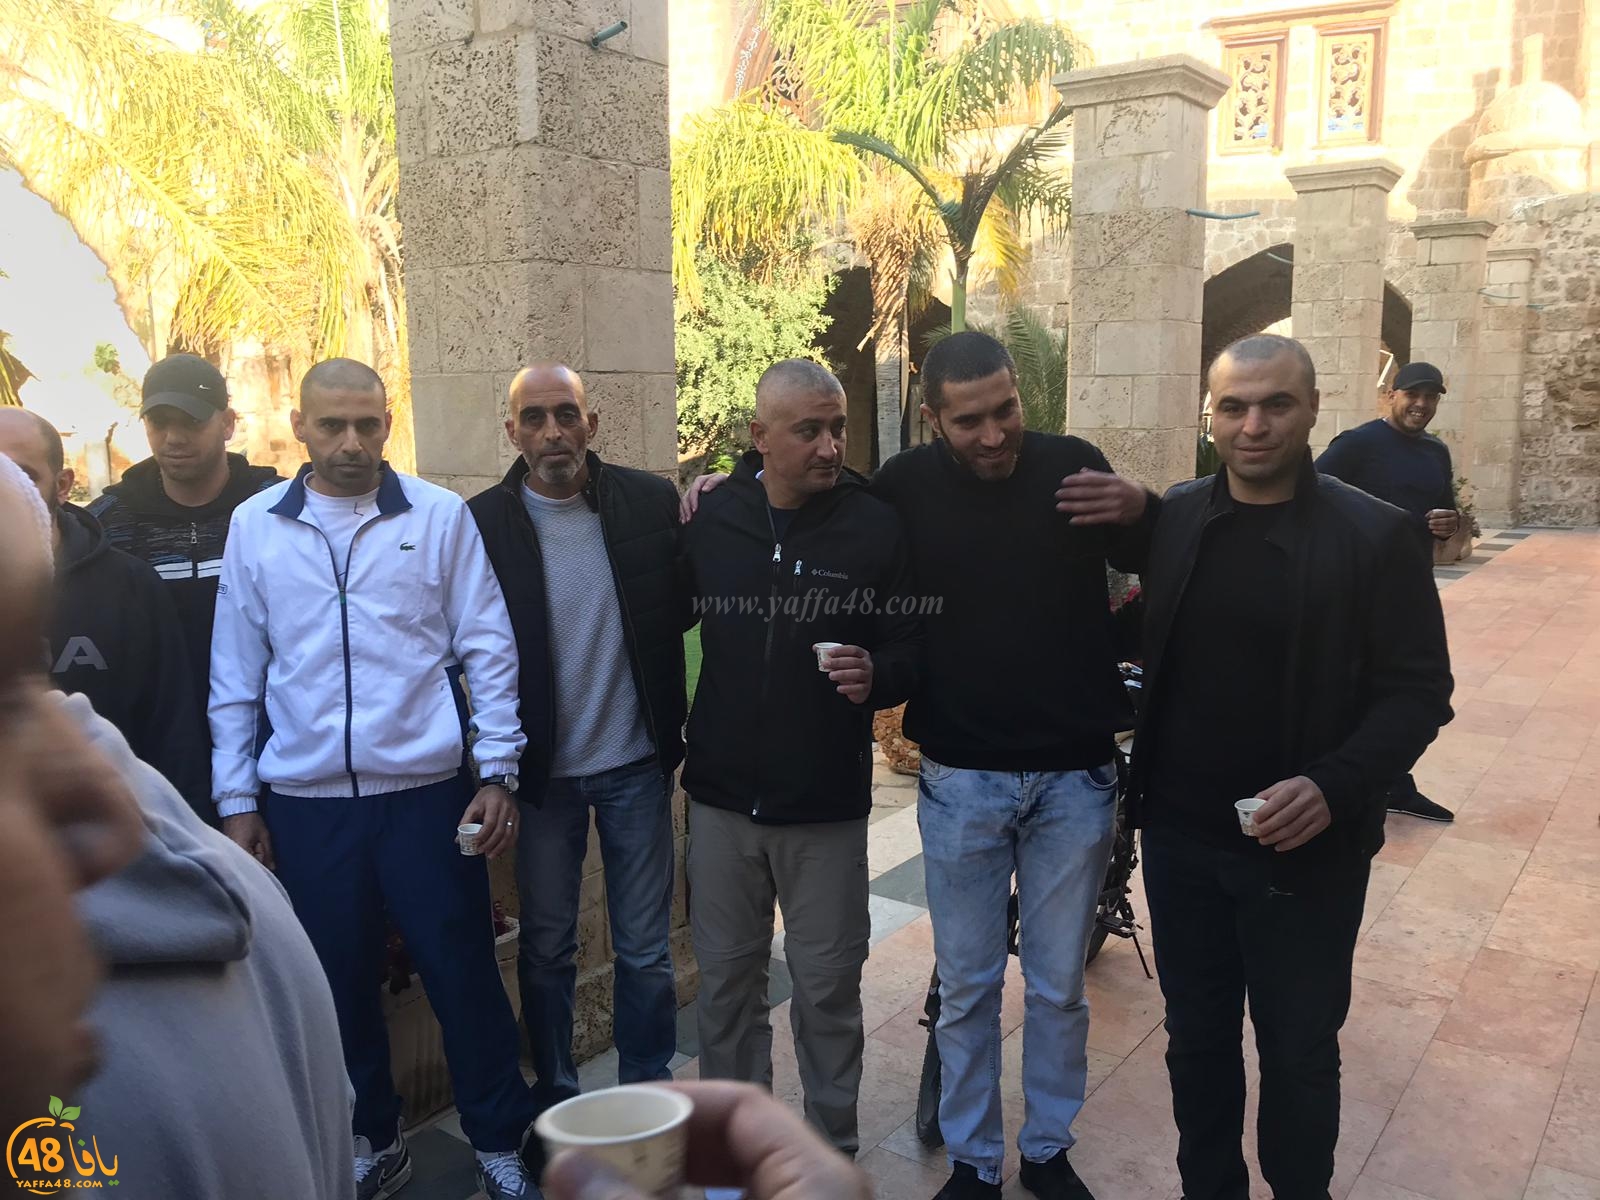  الصلح خير - عقد الصلح بين عدة عائلات في مسجد يافا الكبير بالمدينة 